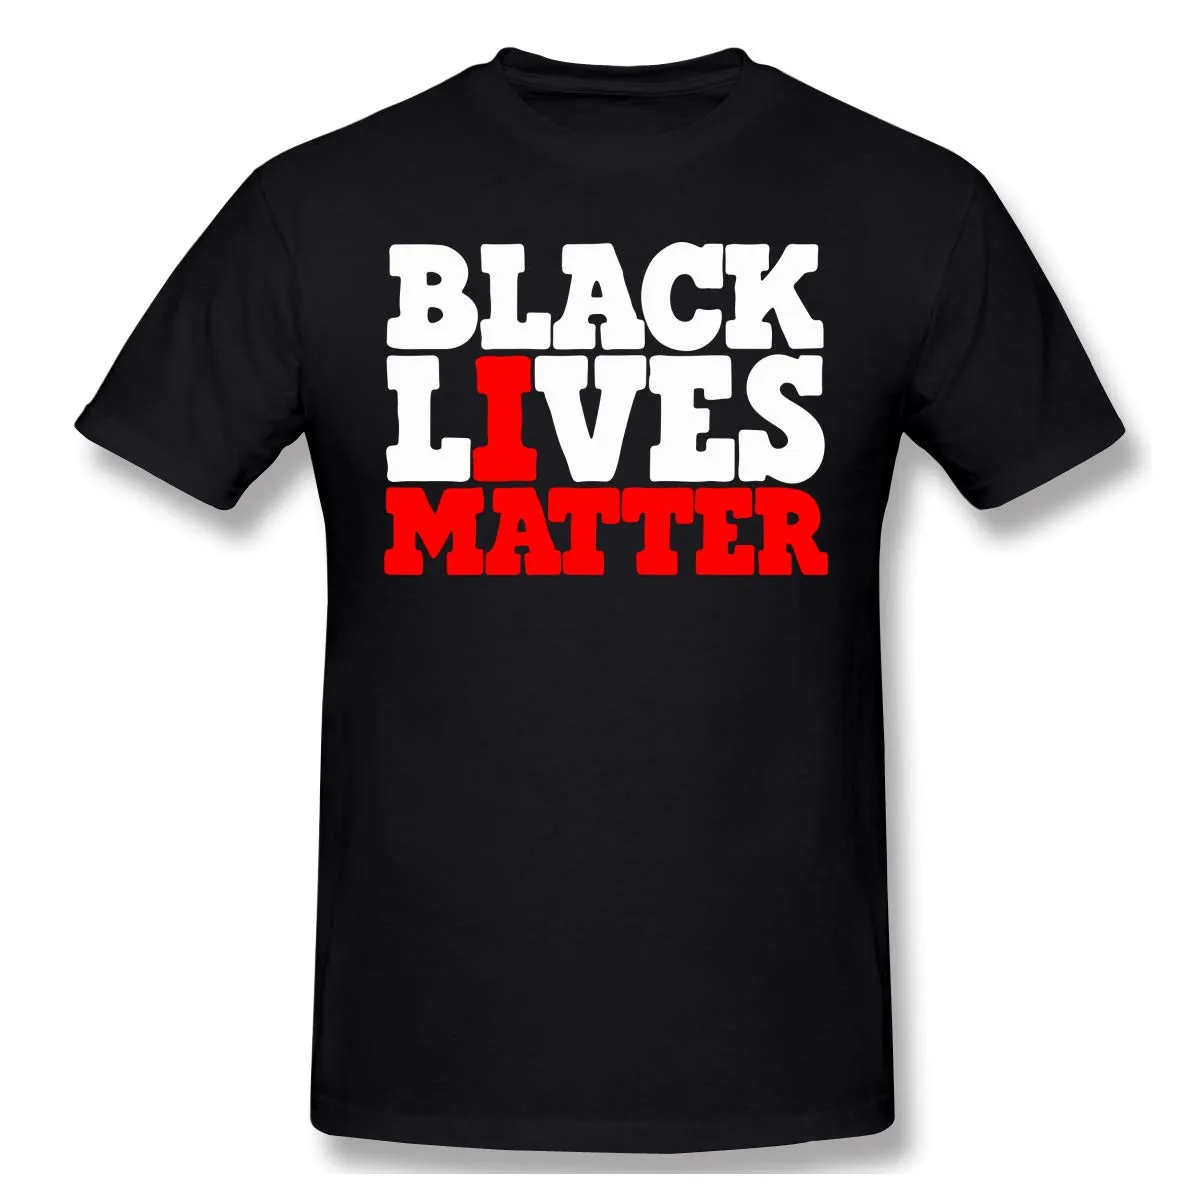 Azionamento degli Stati Uniti Nero Lives Matter I non potente respirare nuova t-shirt per uomo / donna 2020 uguaglianza Lottele Vestiti Moda Modello di moda Nuovi Mens Top Tees